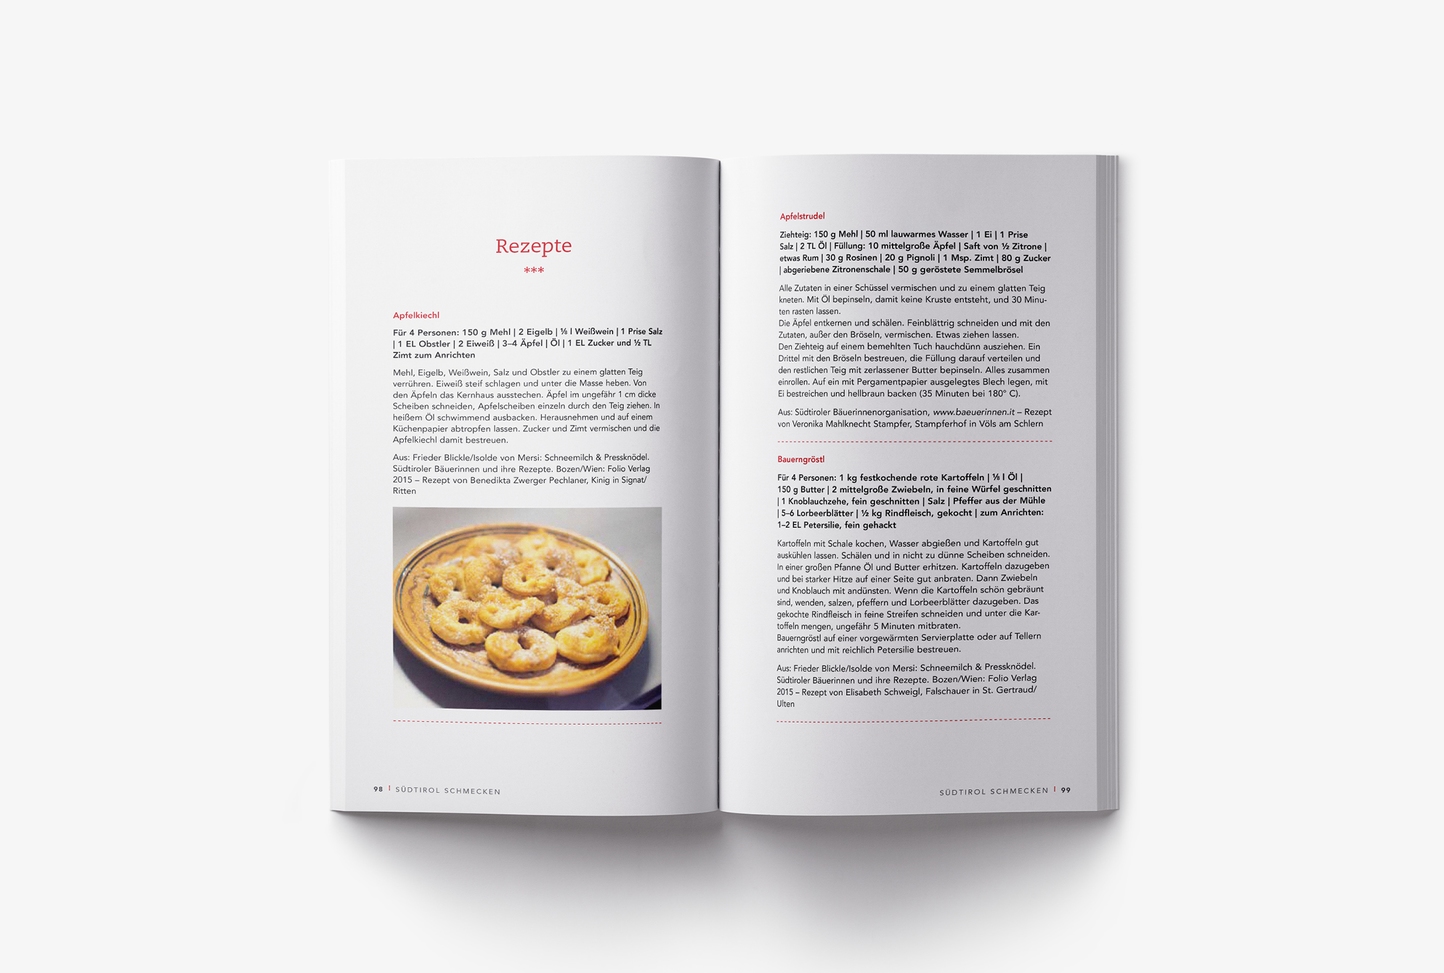 Libro di cucina / Cookbook